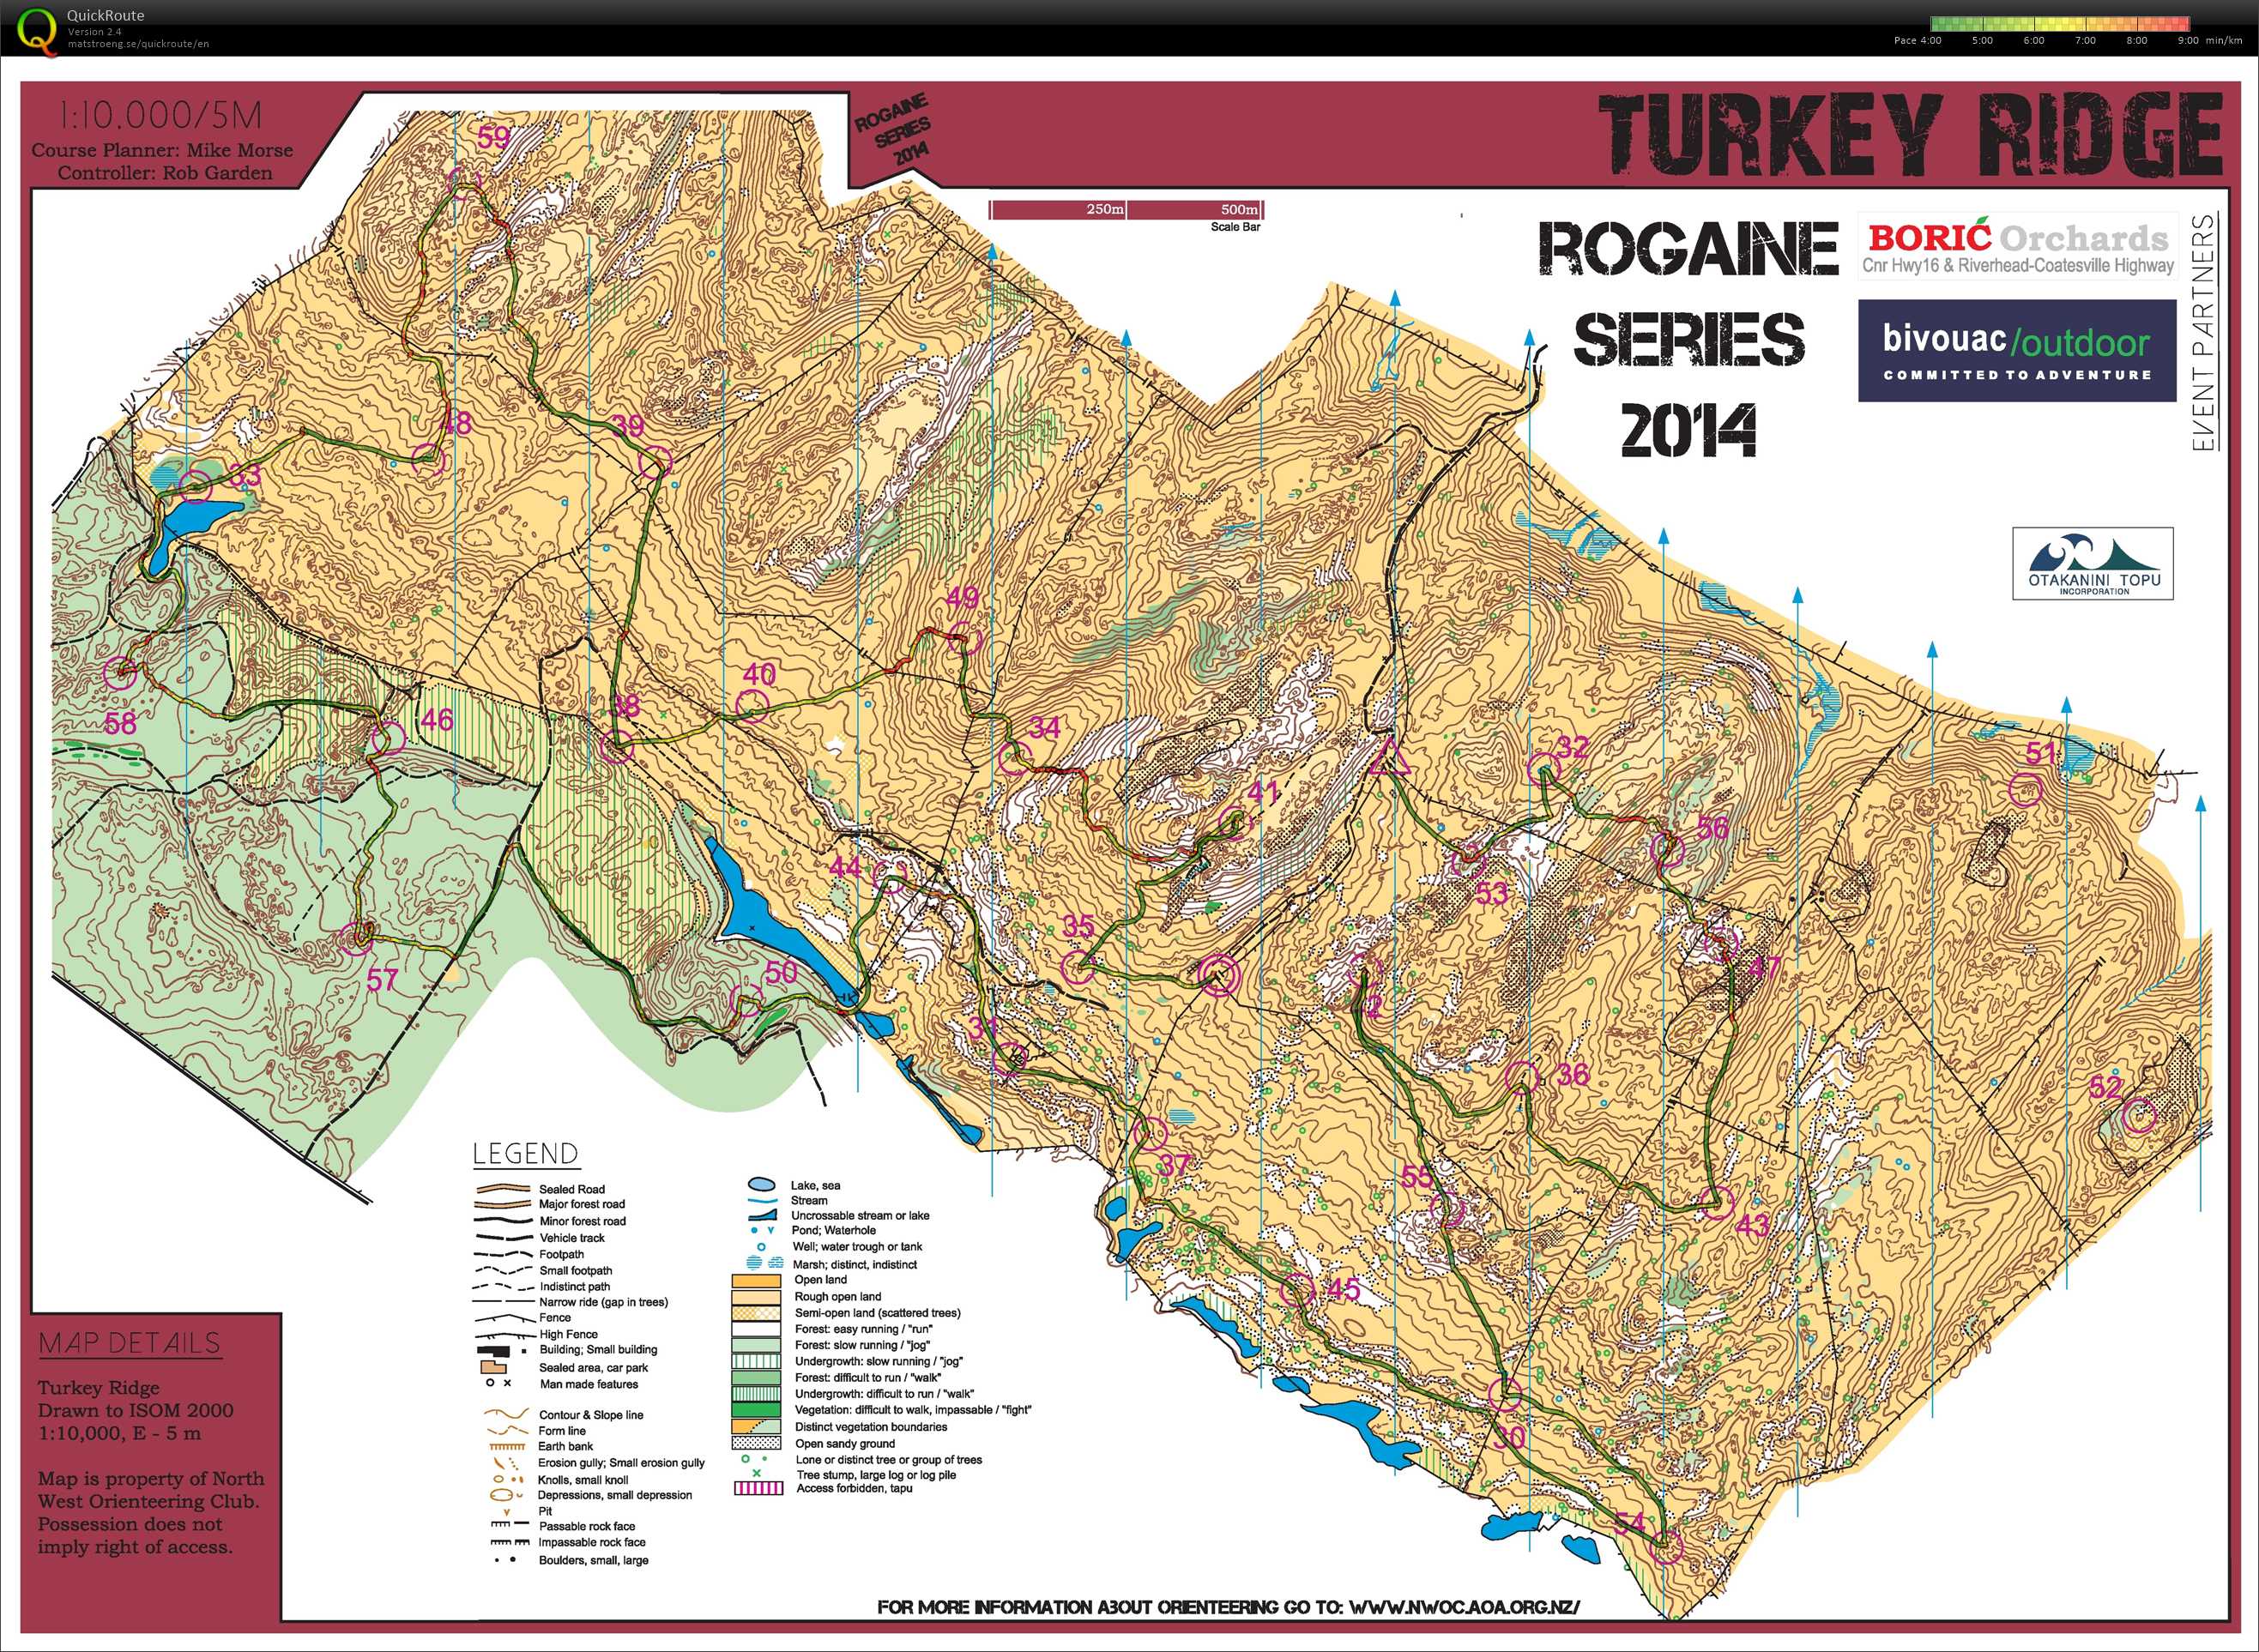 Rogaine Series Part 2 - Turkey Ridge (2014-05-10)